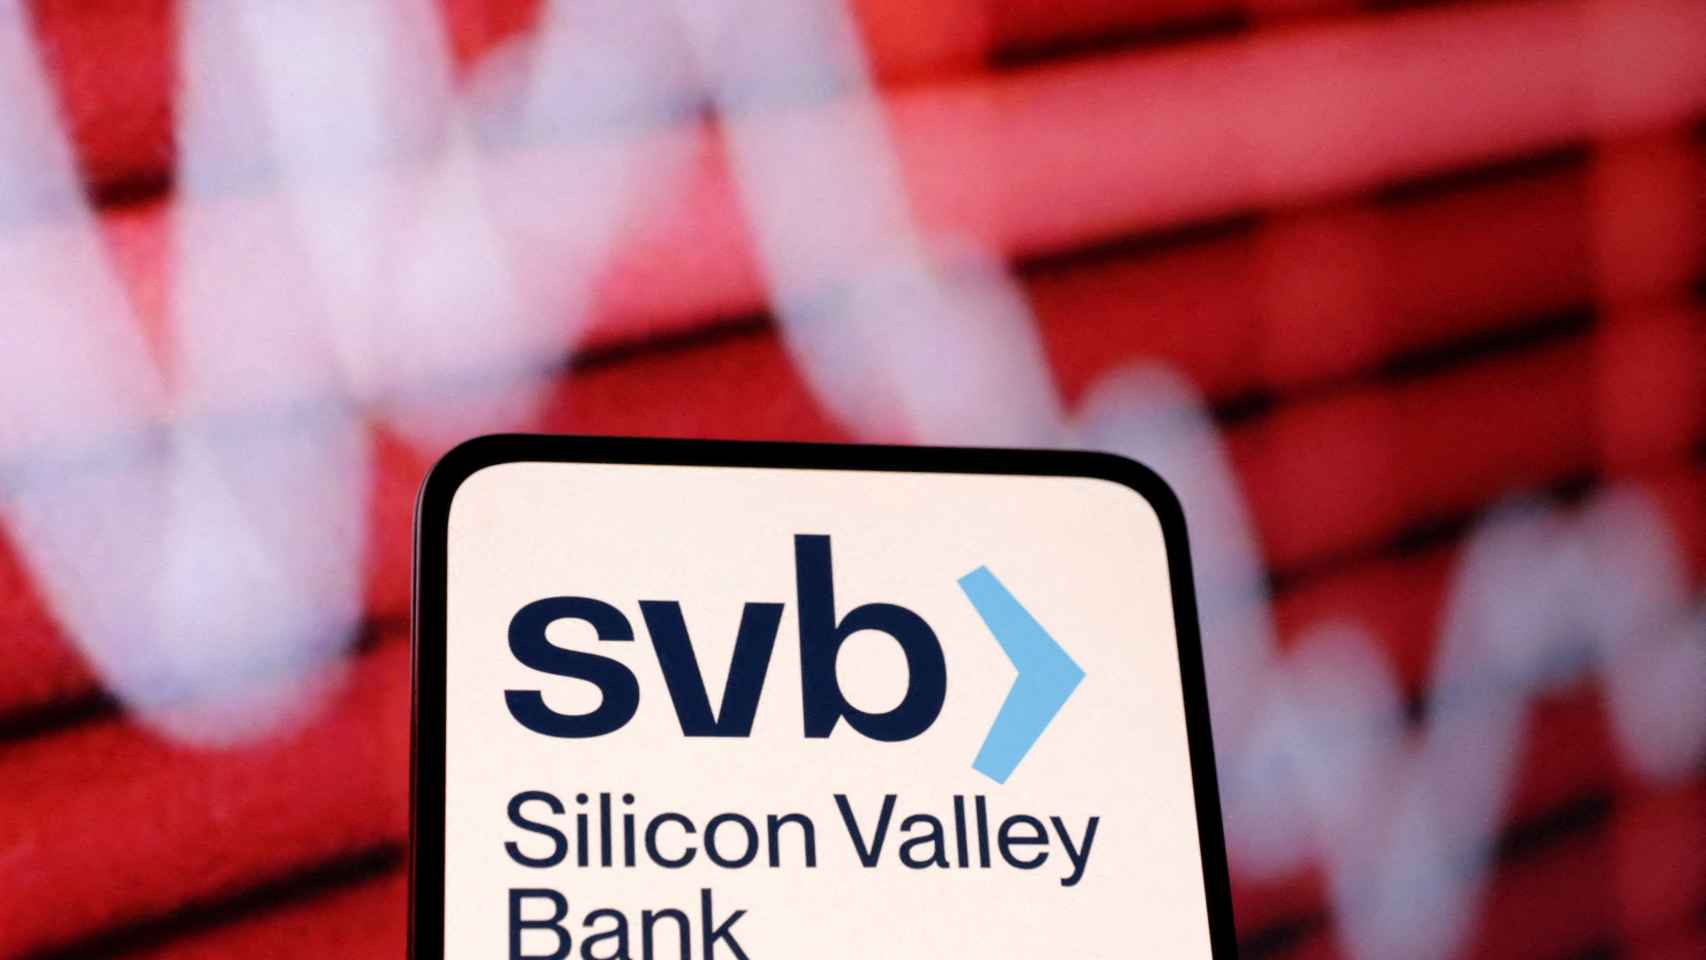 Ilustración con el logo de Silicon Valley Bank.